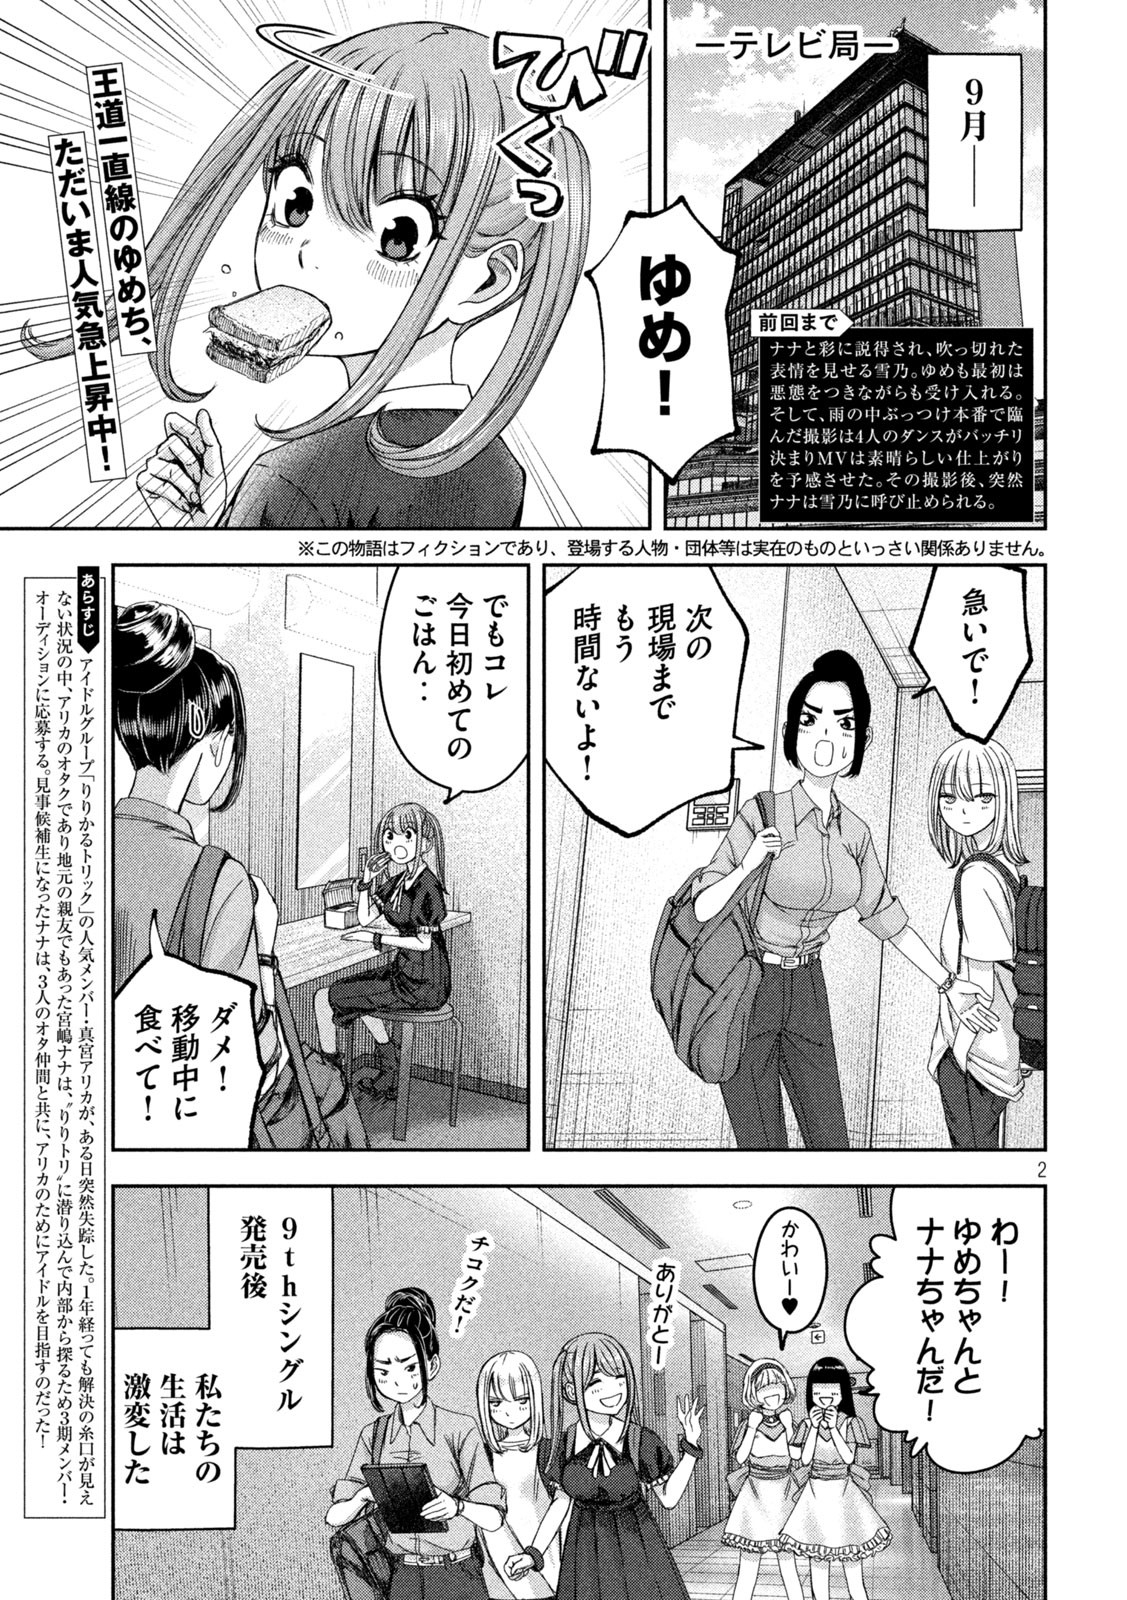 Watashi no Arika - Chapter 41 - Page 2